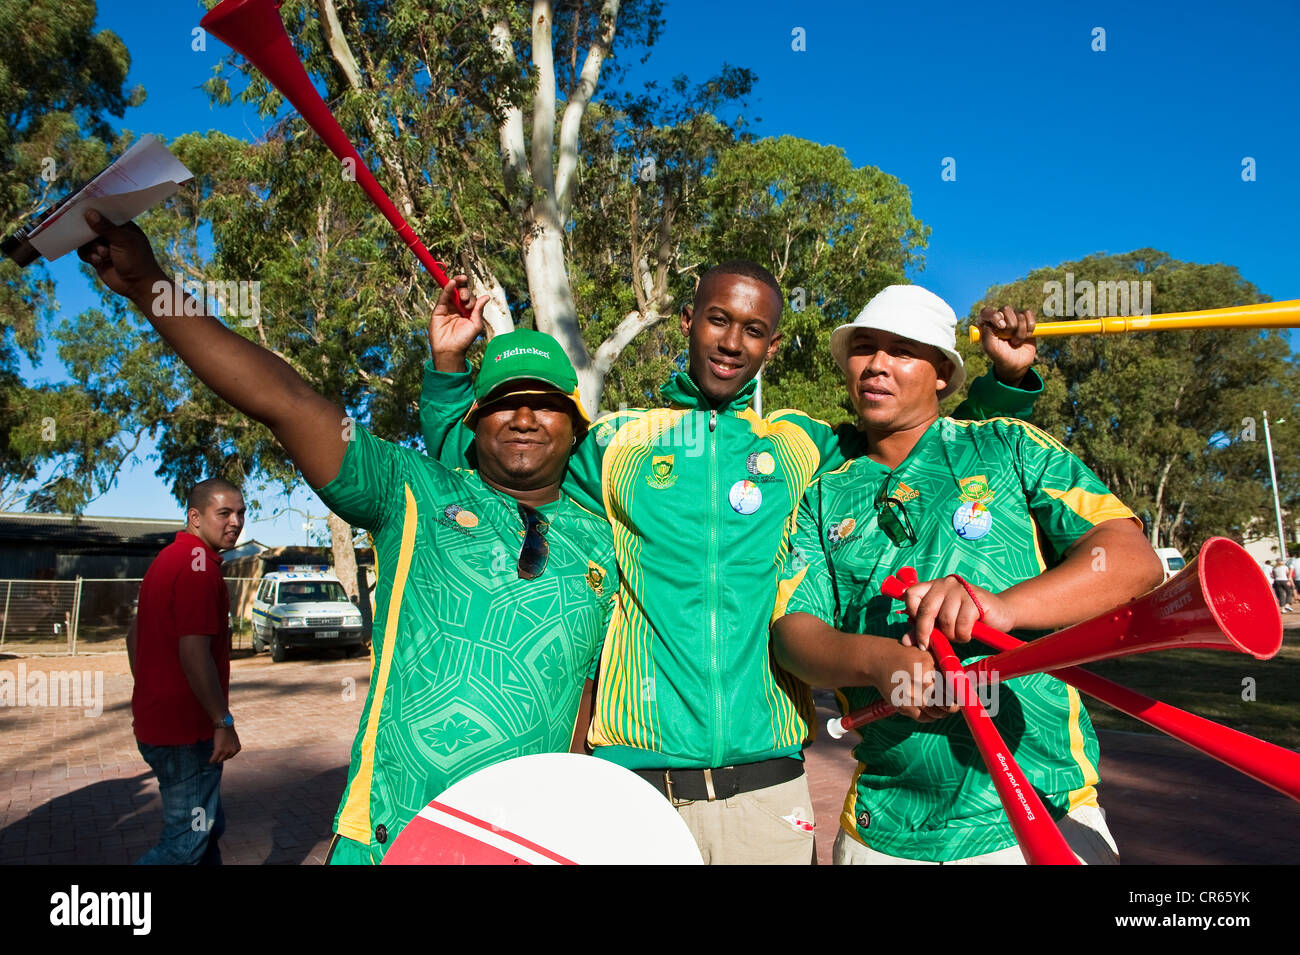 L'Afrique du Sud, Western Cape, Cape Town, les fans de football qui sort du stade Banque D'Images